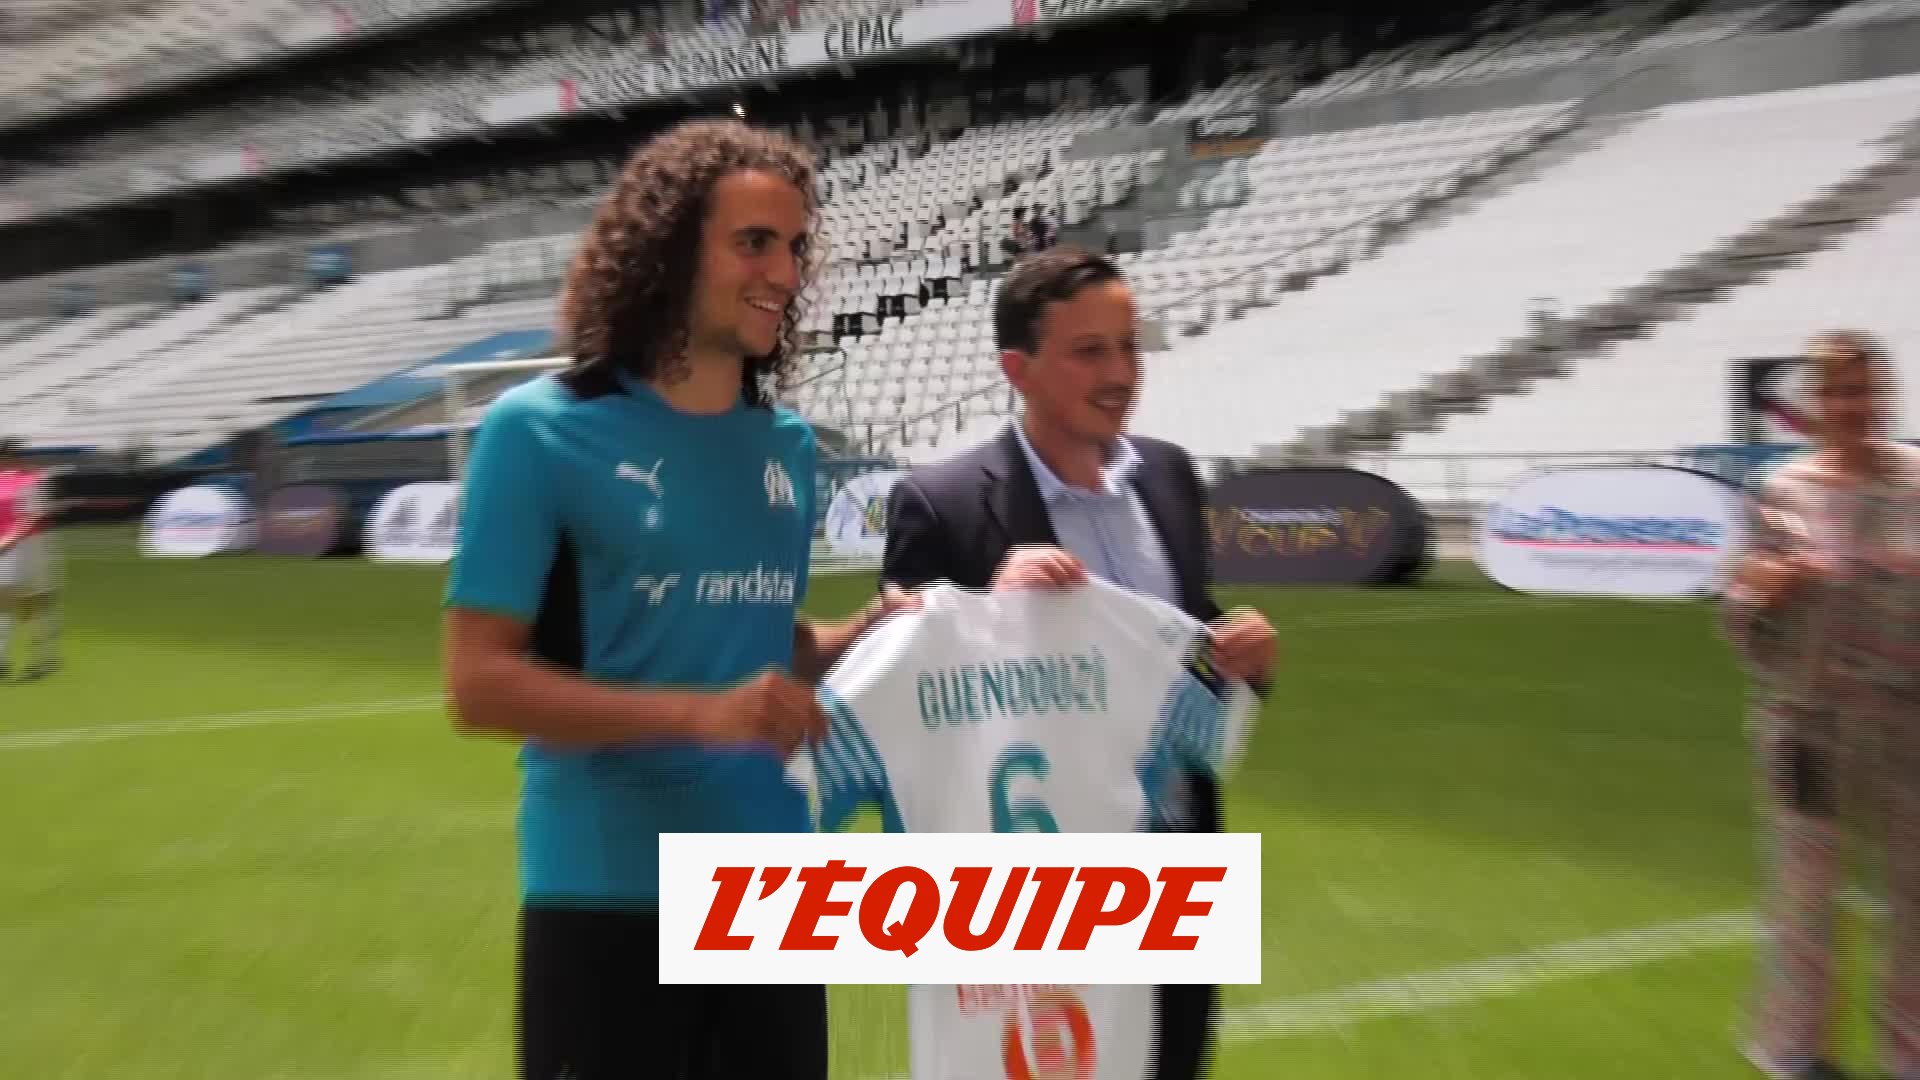 Guendouzi pose avec le maillot de l'OM - Foot - Transferts - OM - Vidéo  Dailymotion